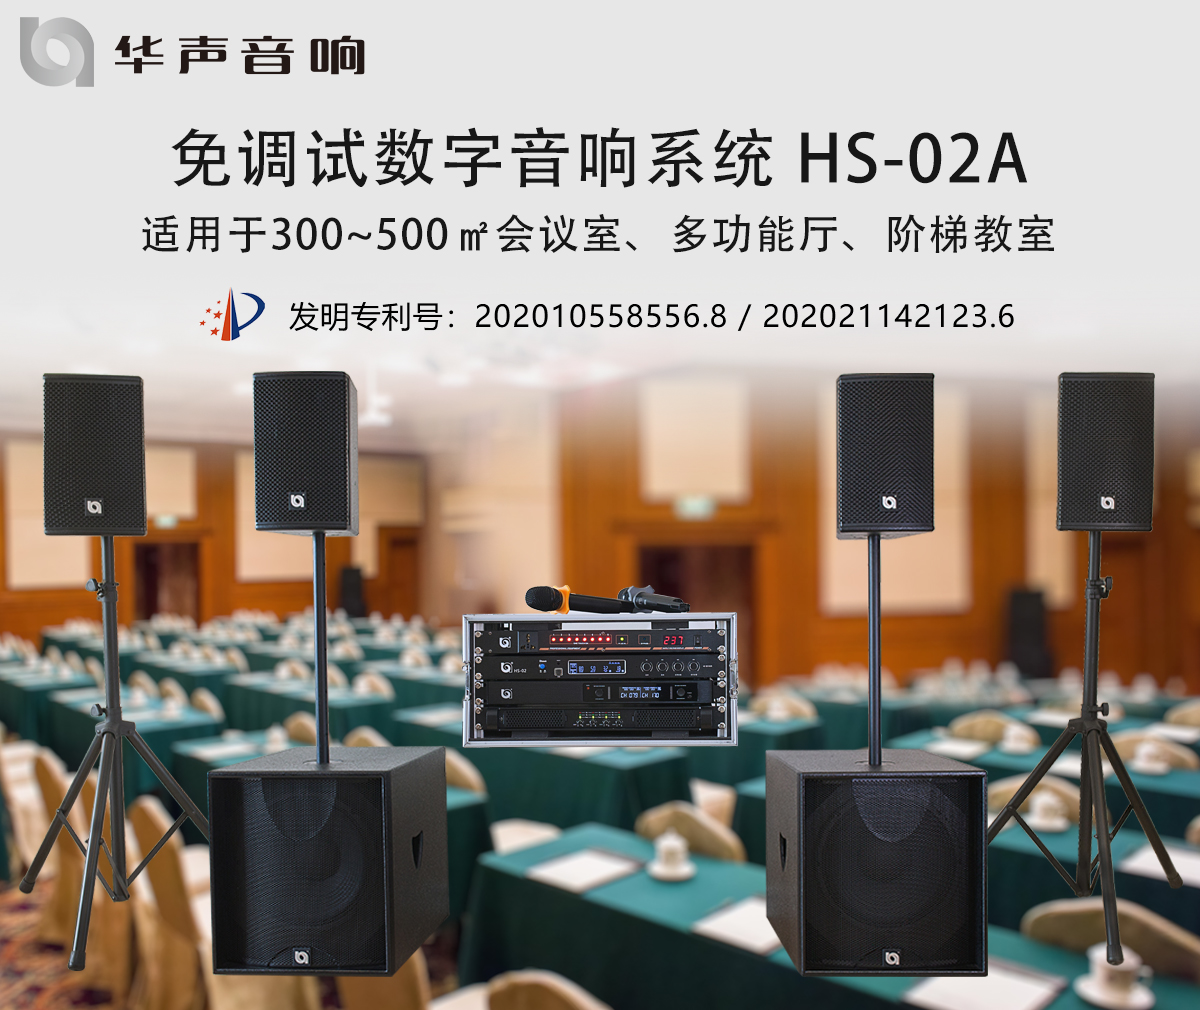 300-500㎡多功能厅 数字音频扩声系统 HS-02A(图1)